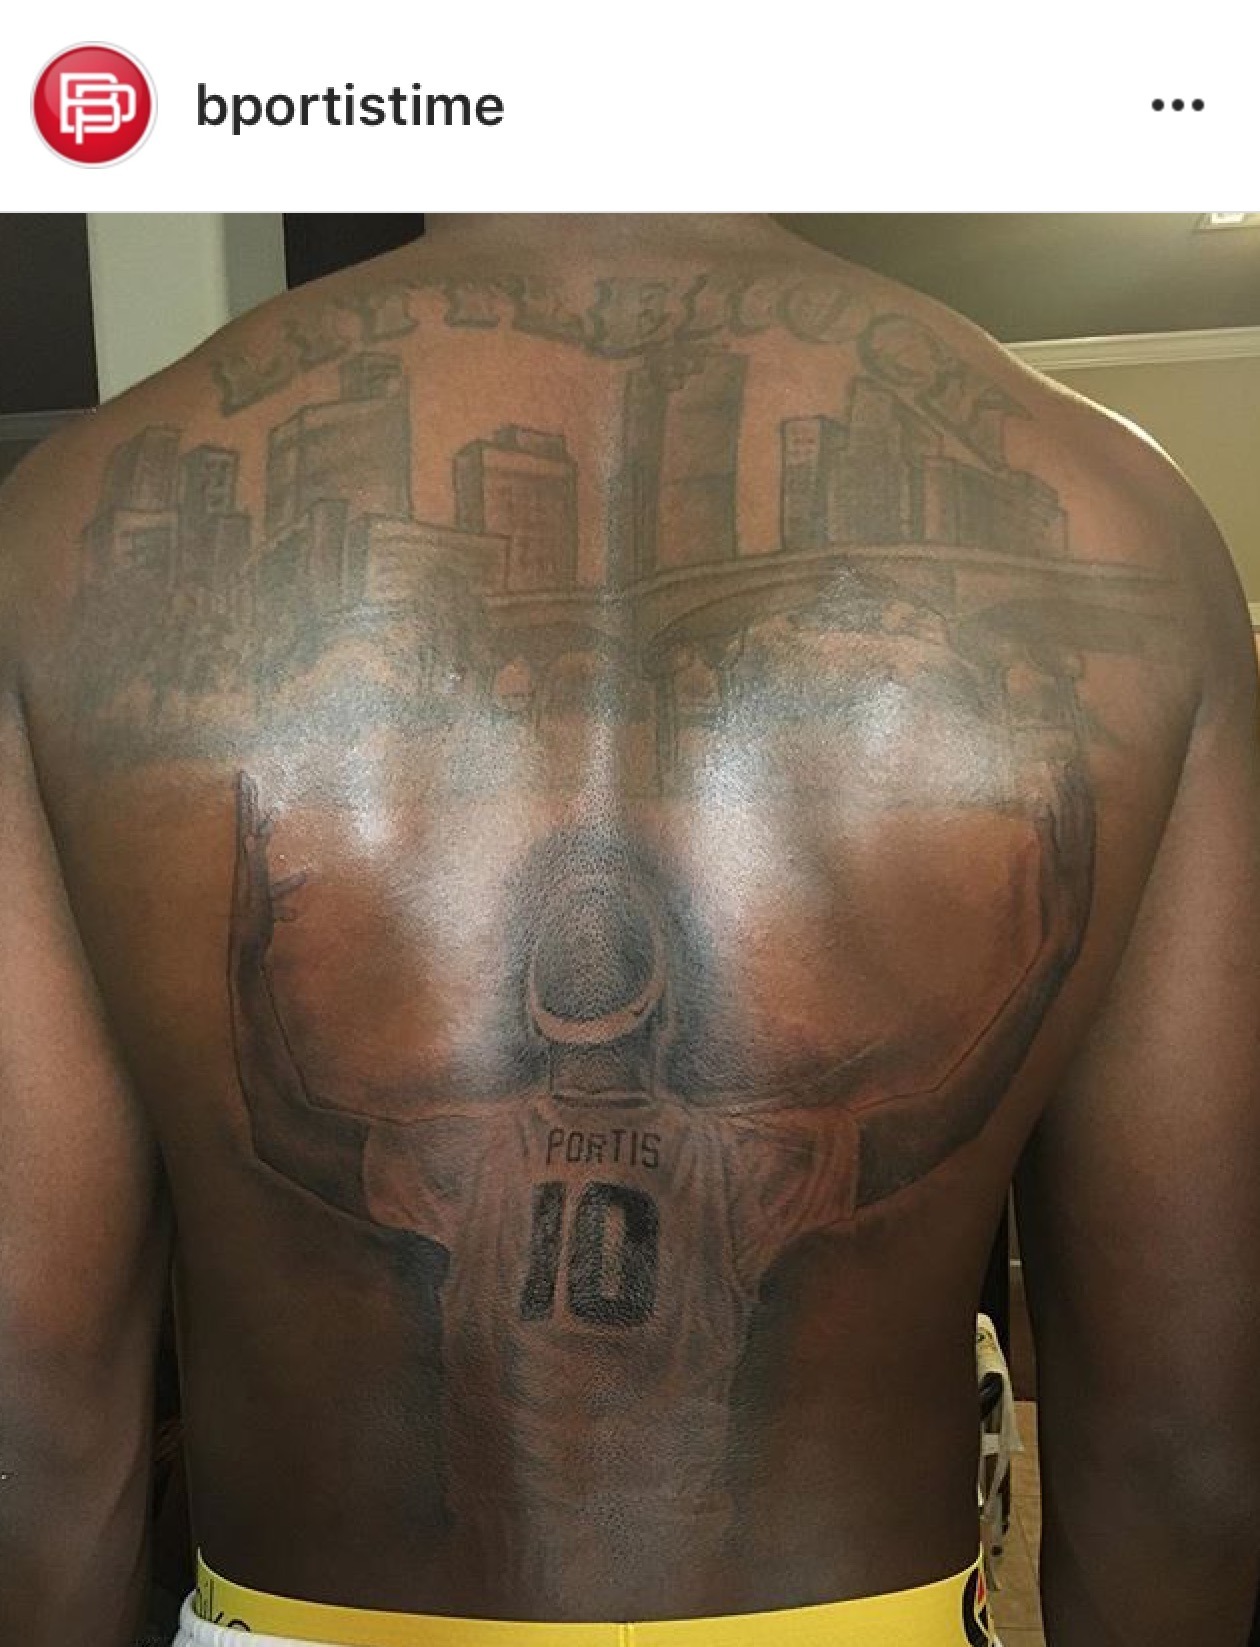  Sports Mockery  on Twitter The Gigantic Tattoo On Bobby Portis Back  Looks Like A Postcard  httptco70hcpe7EDe Chicago Bulls SeeRed  httptcod7OTpIXlhX  Twitter